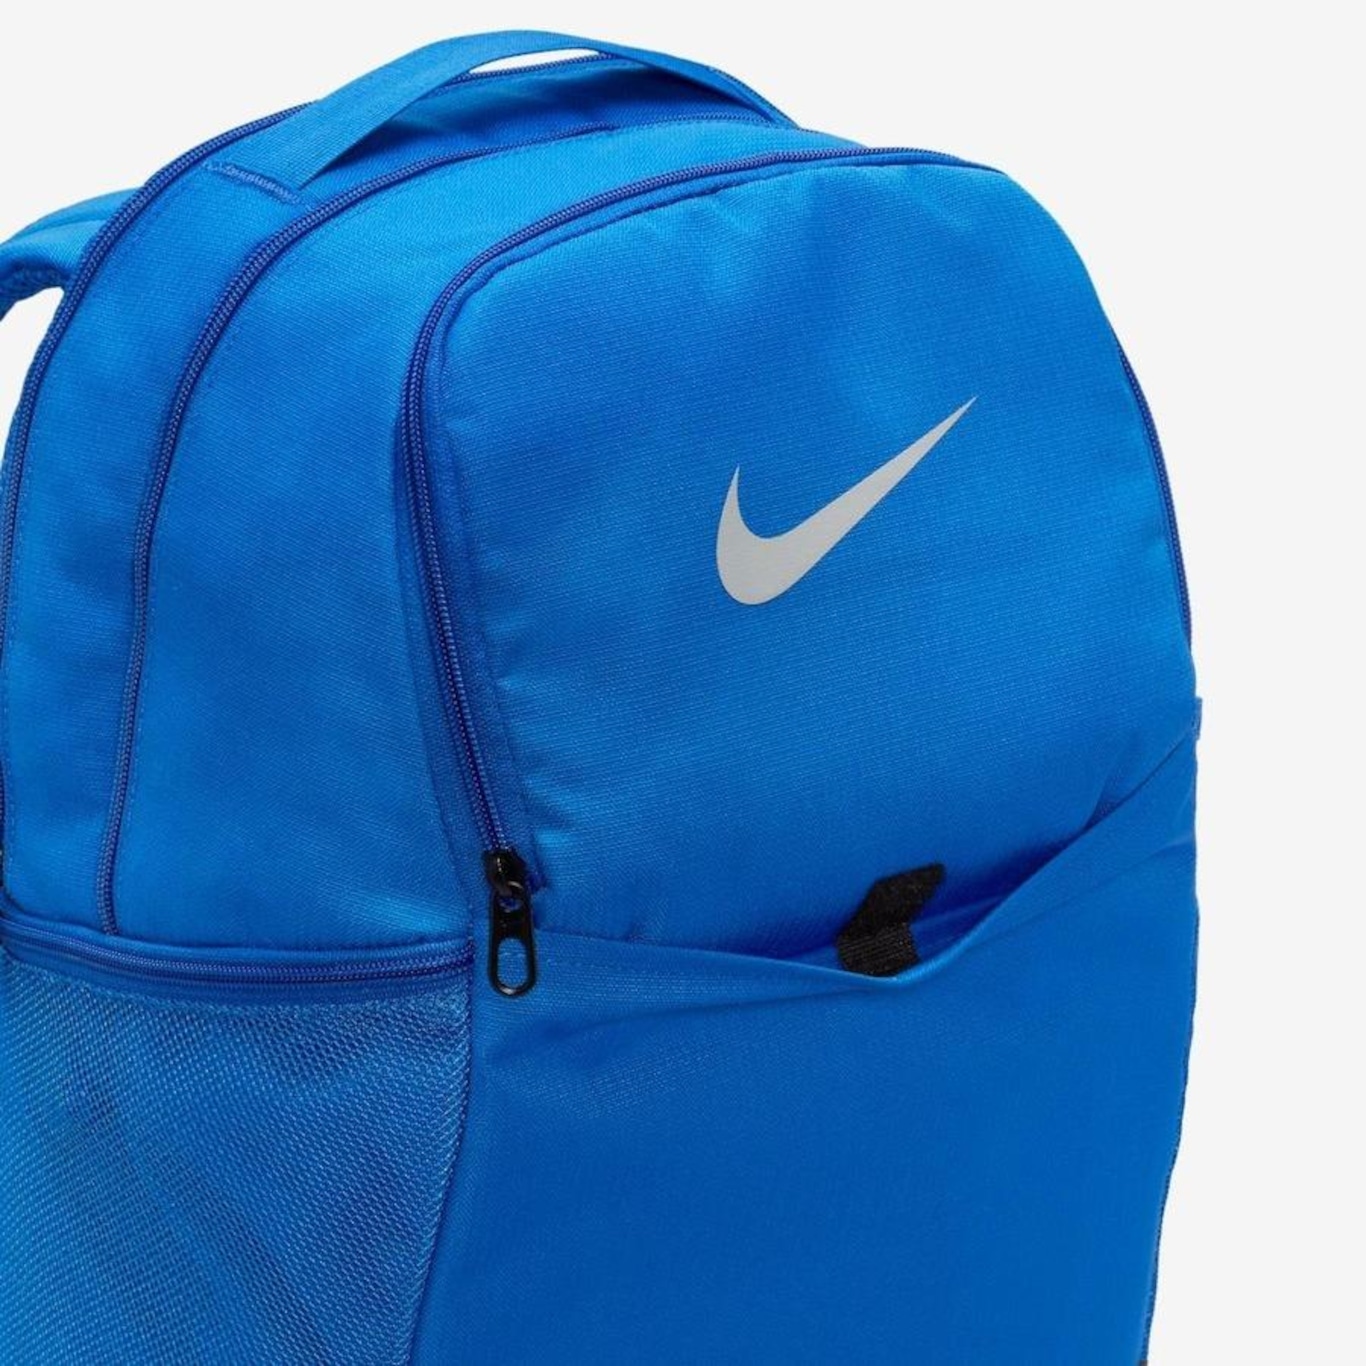 Mochila Nike Brasilia Azul